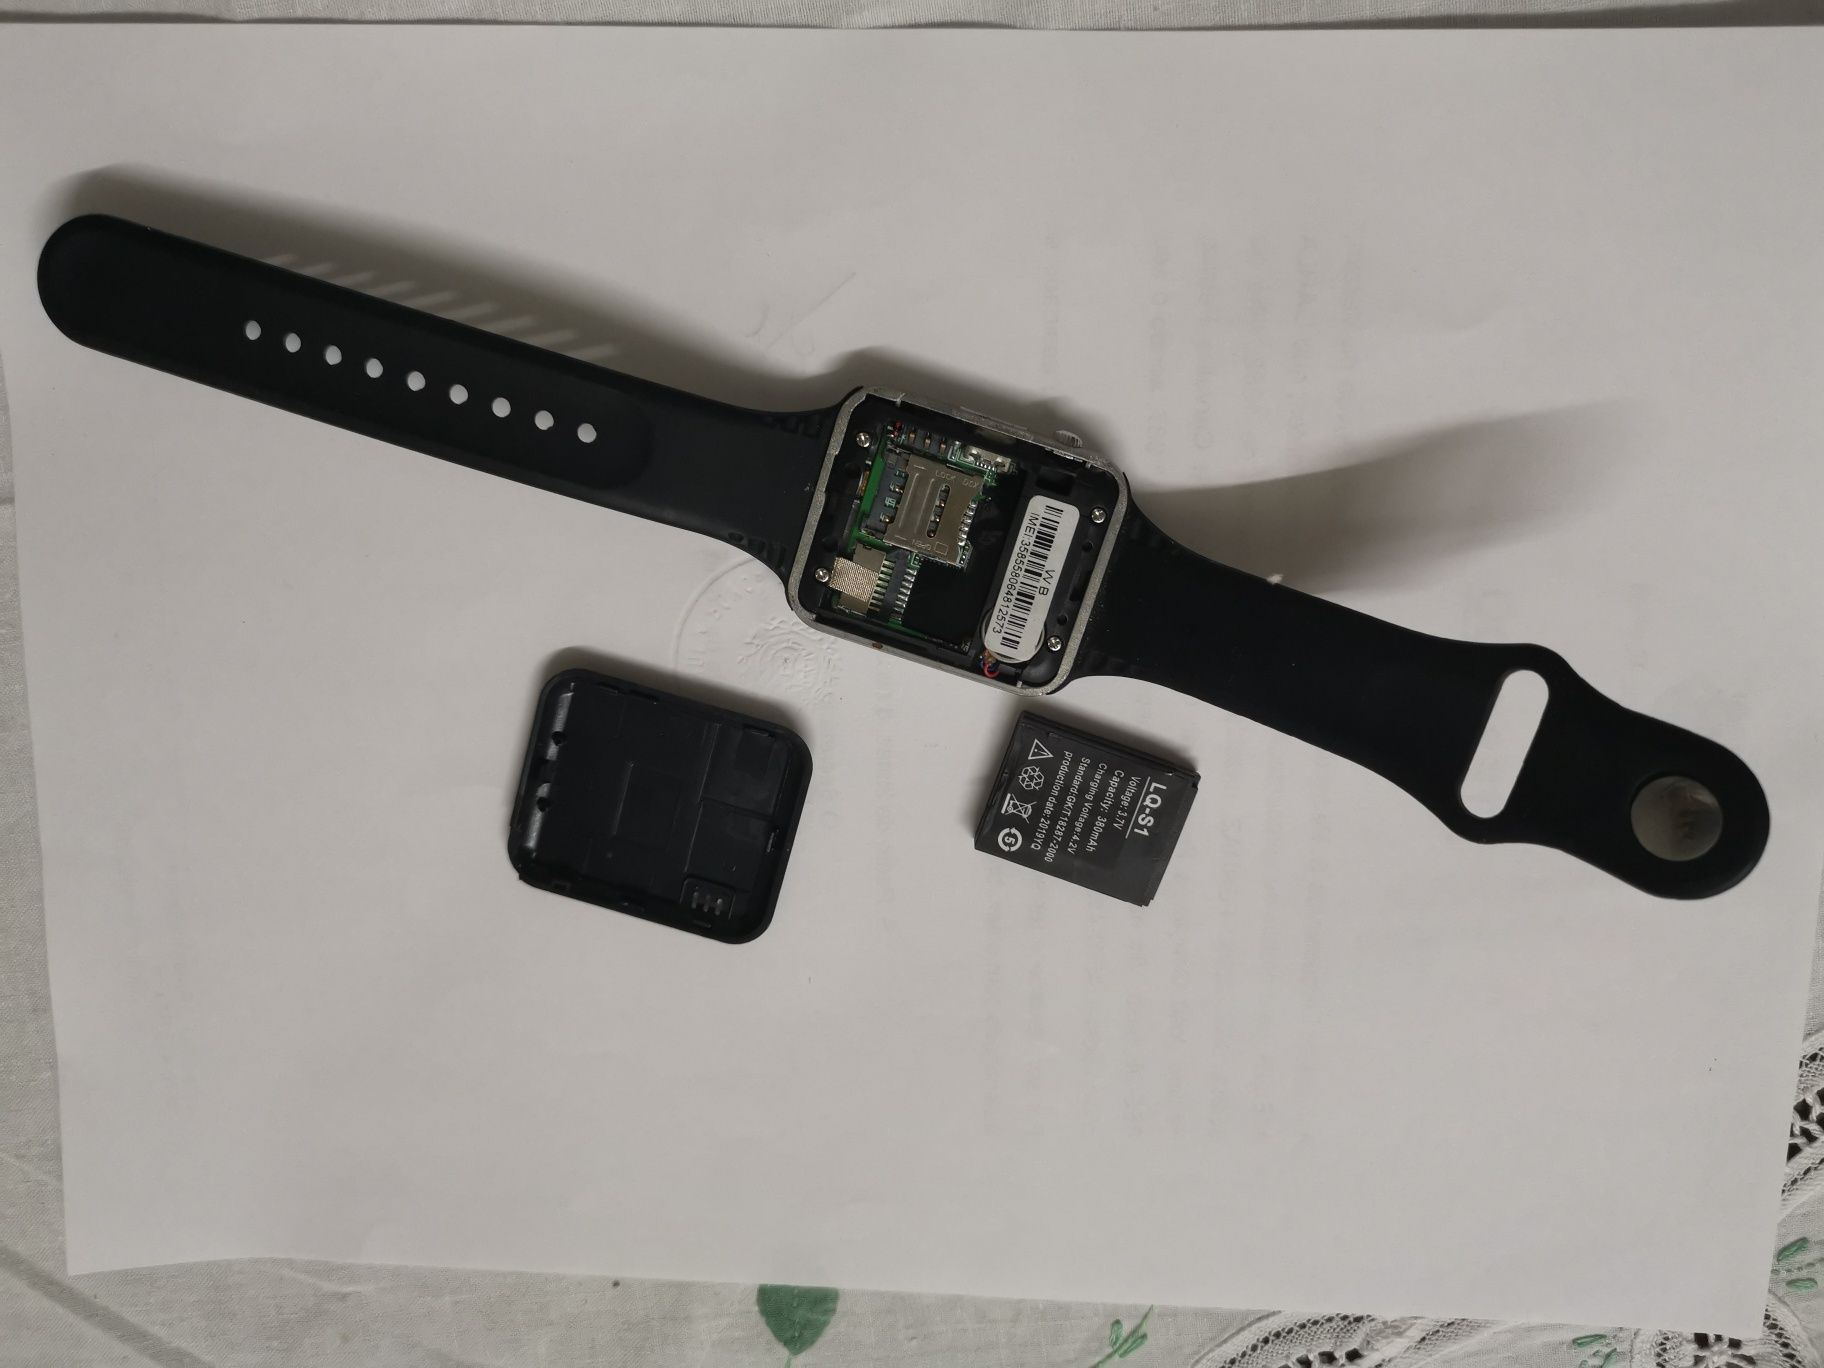 Relógio Smartwatch A1